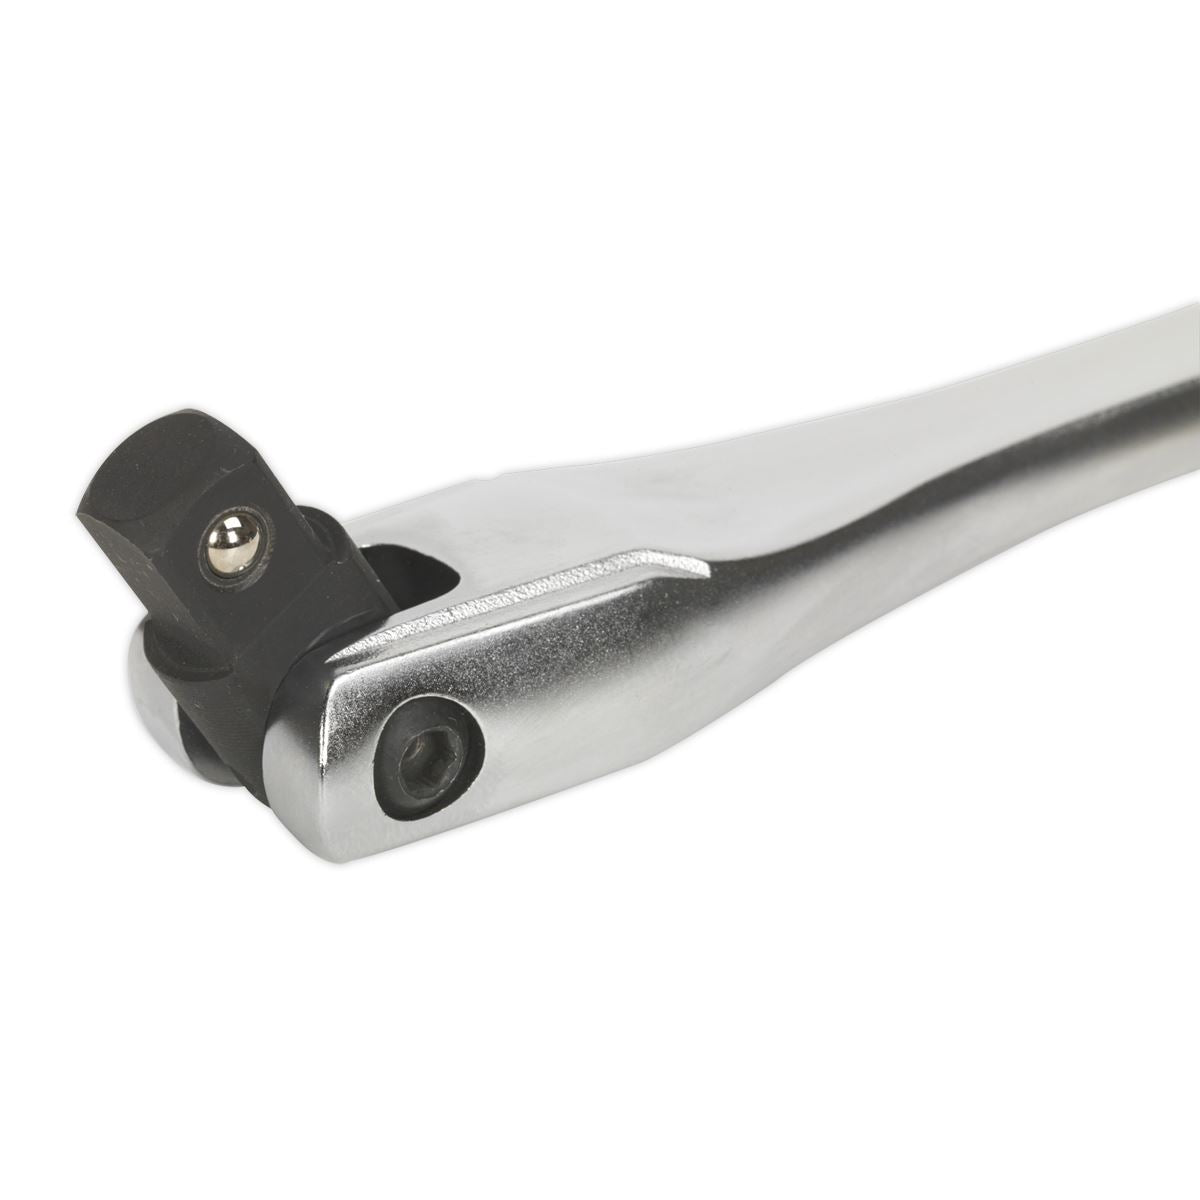 Sealey Premier 600mm 1/2" Drive Breaker Bar Flexi Head Socket Wrench